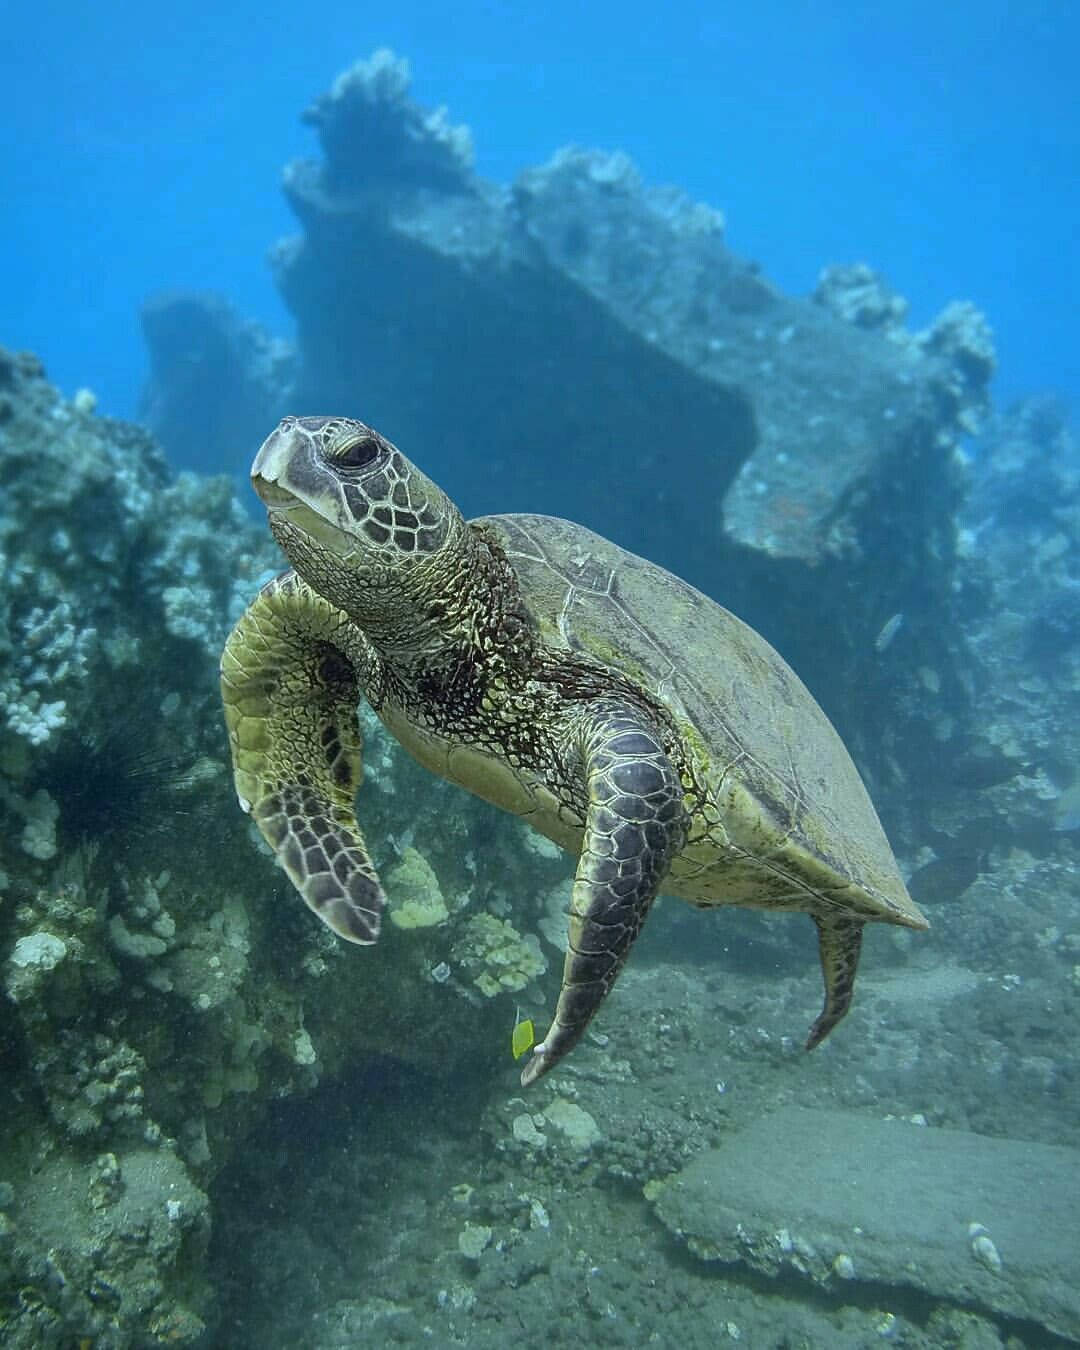 Green Cute Turtle In Deep Ocean